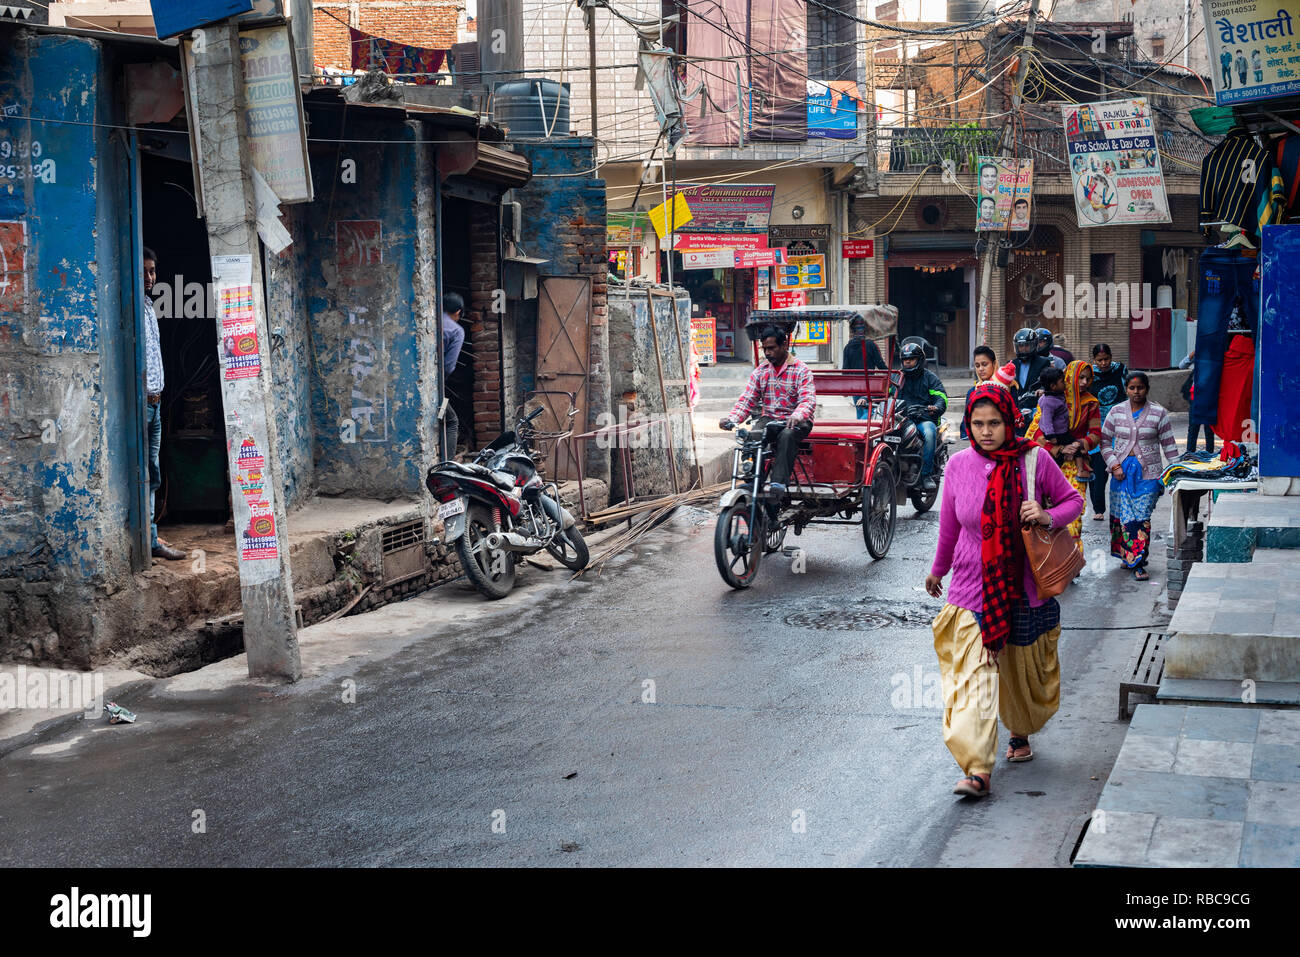 Una strada trafficata in Madanpur Khadar villaggio con e-rickshaws, due ruote e pedoni su una strada bagnata fiancheggiata da negozi con un drain aperto. Nuova Delhi Foto Stock